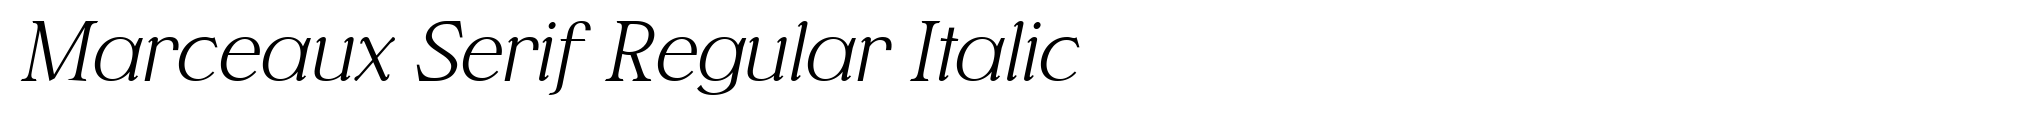 Marceaux Serif Regular Italic image